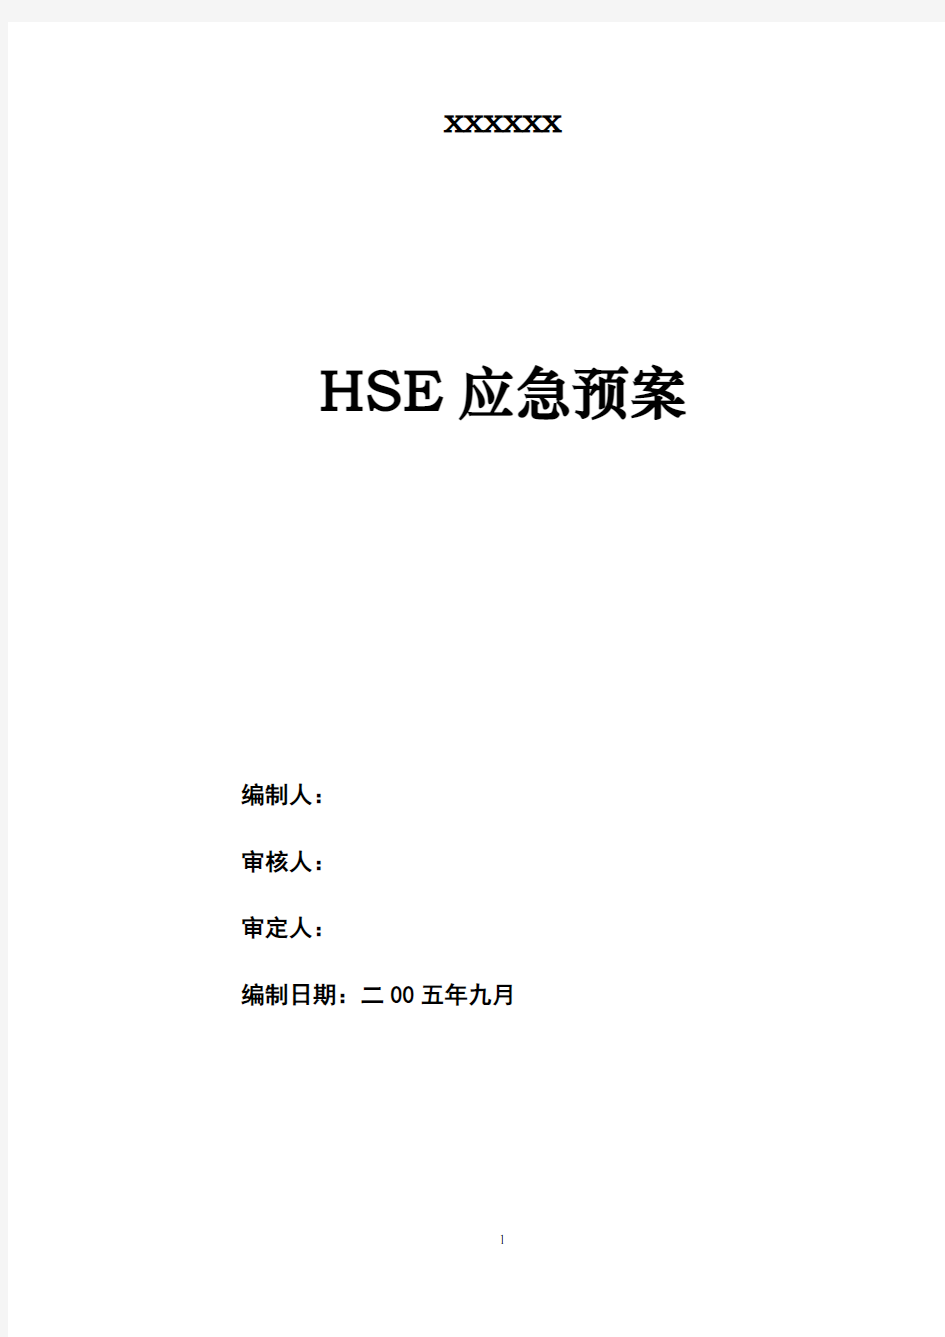 【工程】HSE应急预案方案